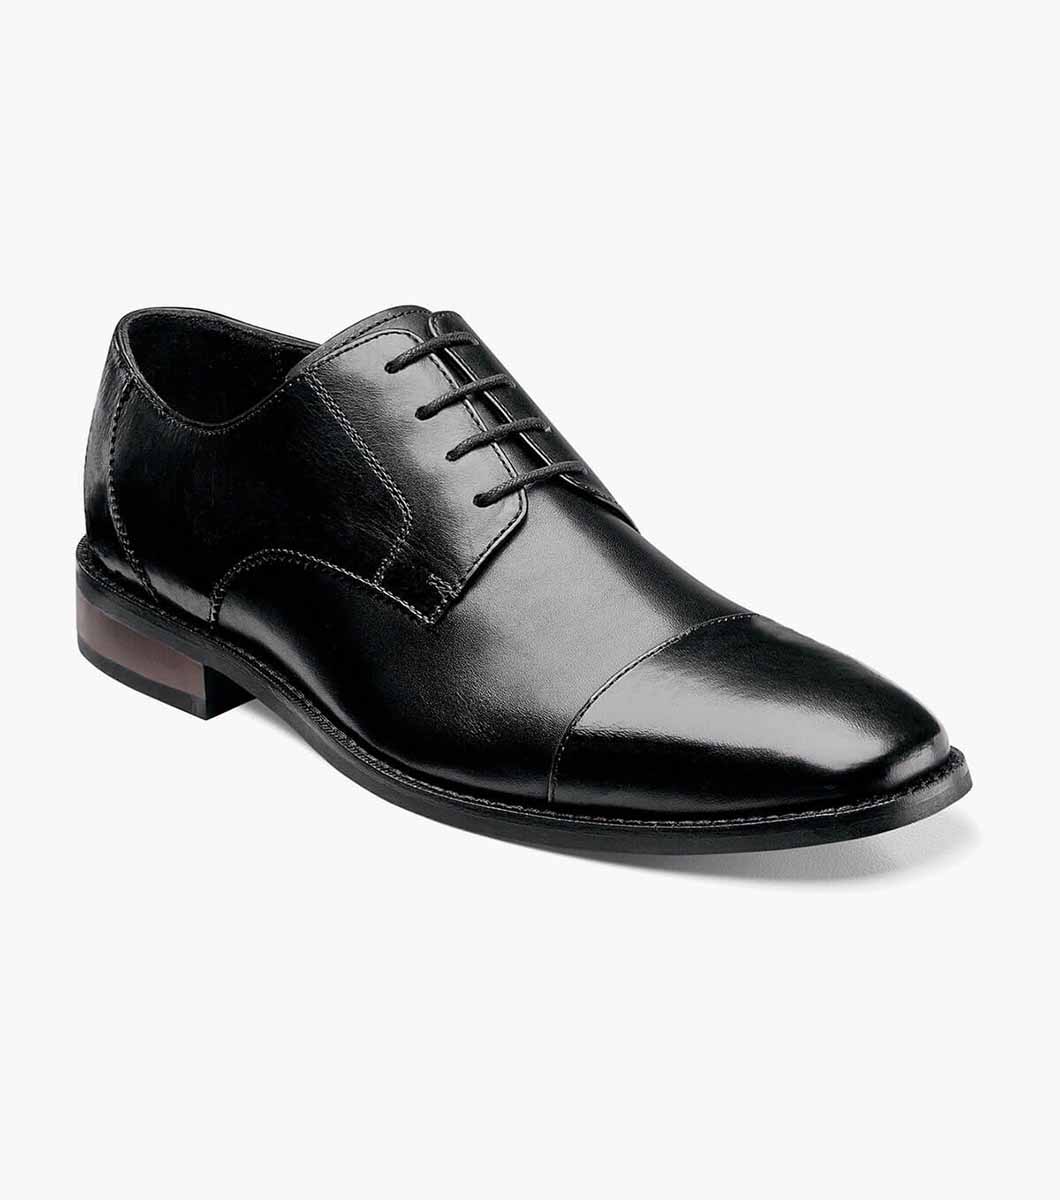 Matera Cap Toe Oxford Men’s Dress Shoes | Florsheim.com